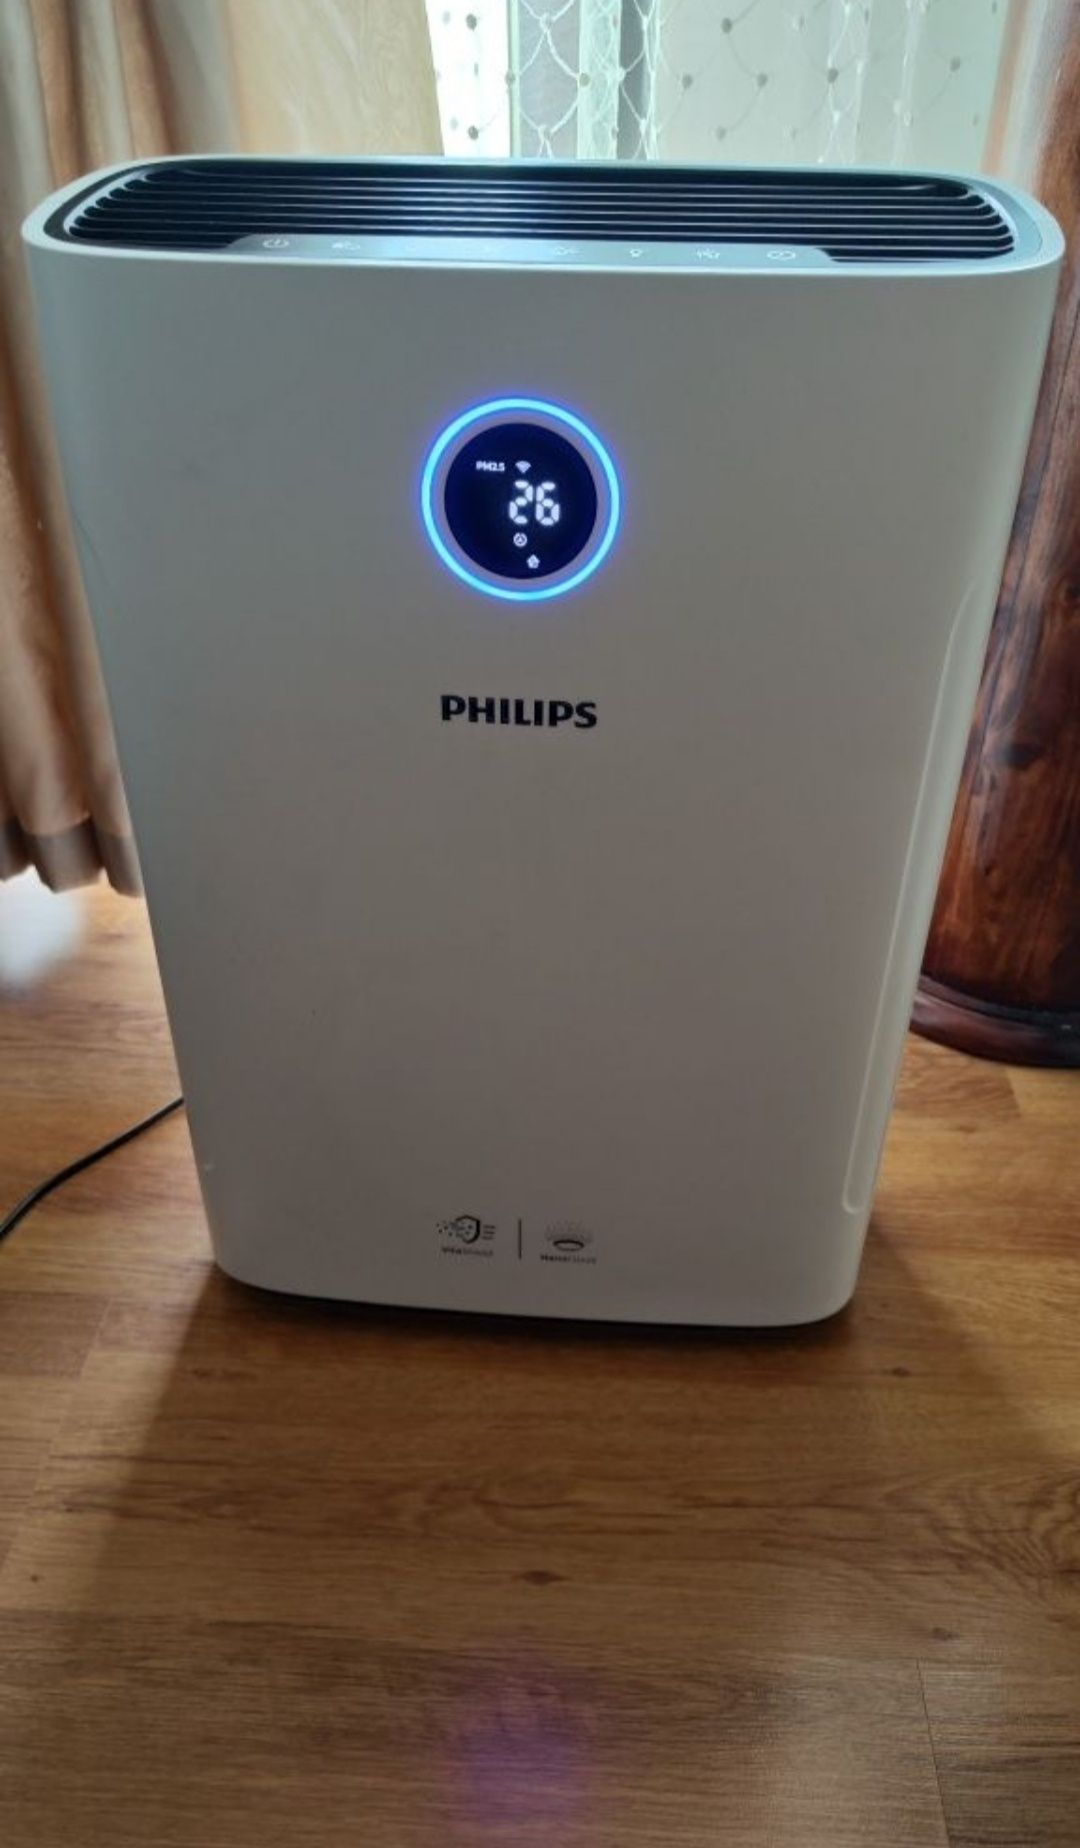 Пречиствател за въздух Philips